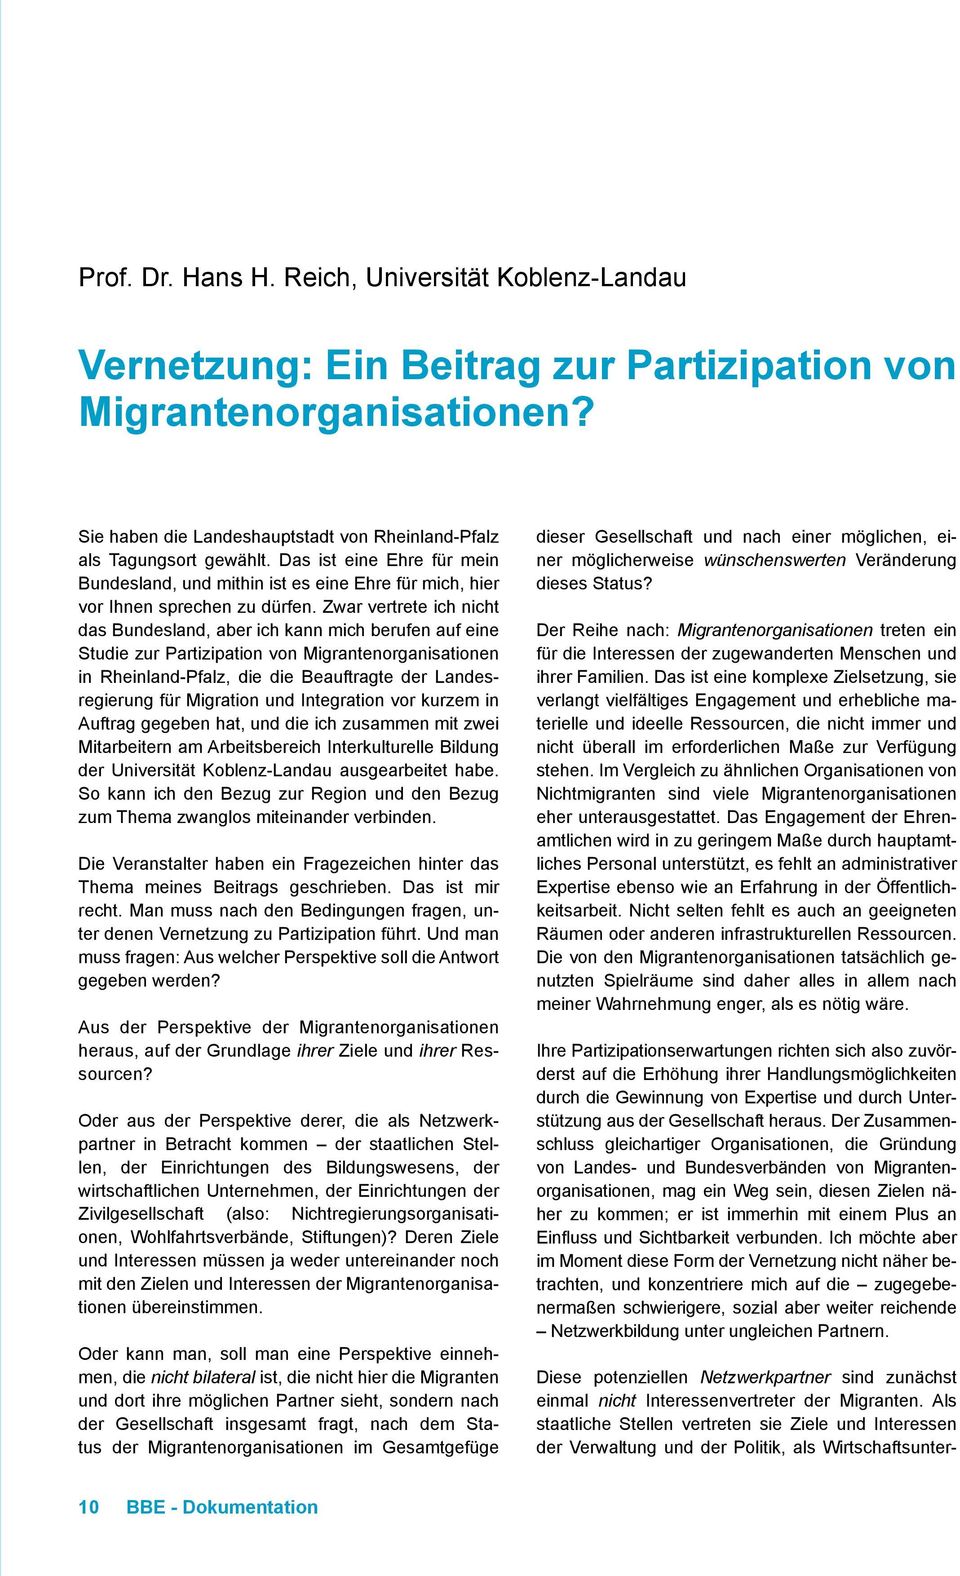 Zwar vertrete ich nicht das Bundesland, aber ich kann mich berufen auf eine Studie zur Partizipation von Migrantenorganisationen in Rheinland-Pfalz, die die Beauftragte der Landesregierung für